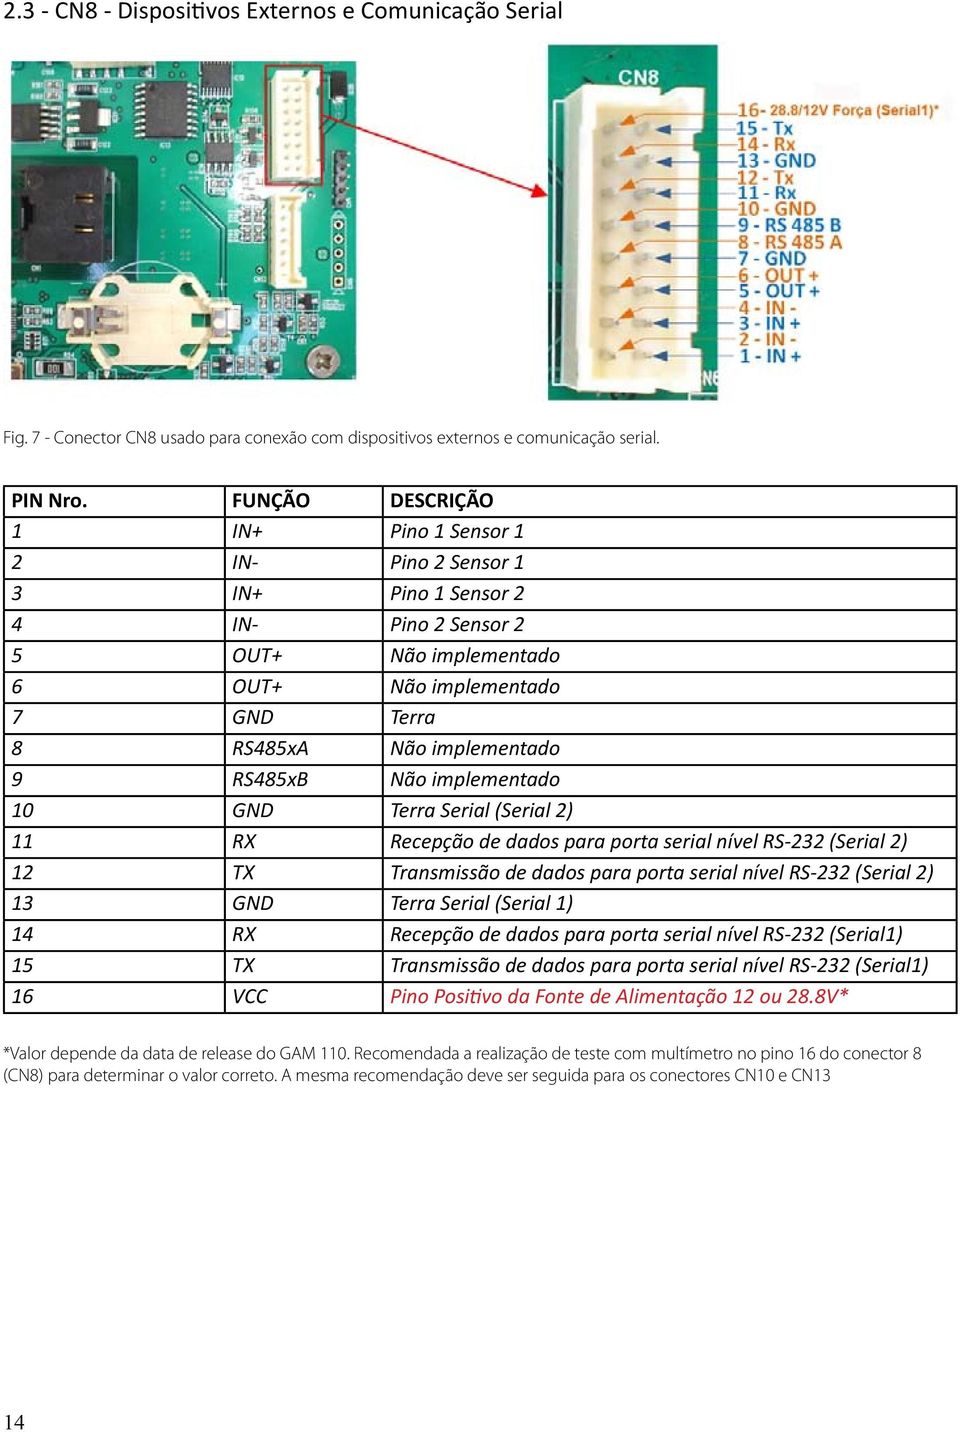 RS485xB Não implementado 10 GND Terra Serial (Serial 2) 11 RX Recepção de dados para porta serial nível RS-232 (Serial 2) 12 TX Transmissão de dados para porta serial nível RS-232 (Serial 2) 13 GND